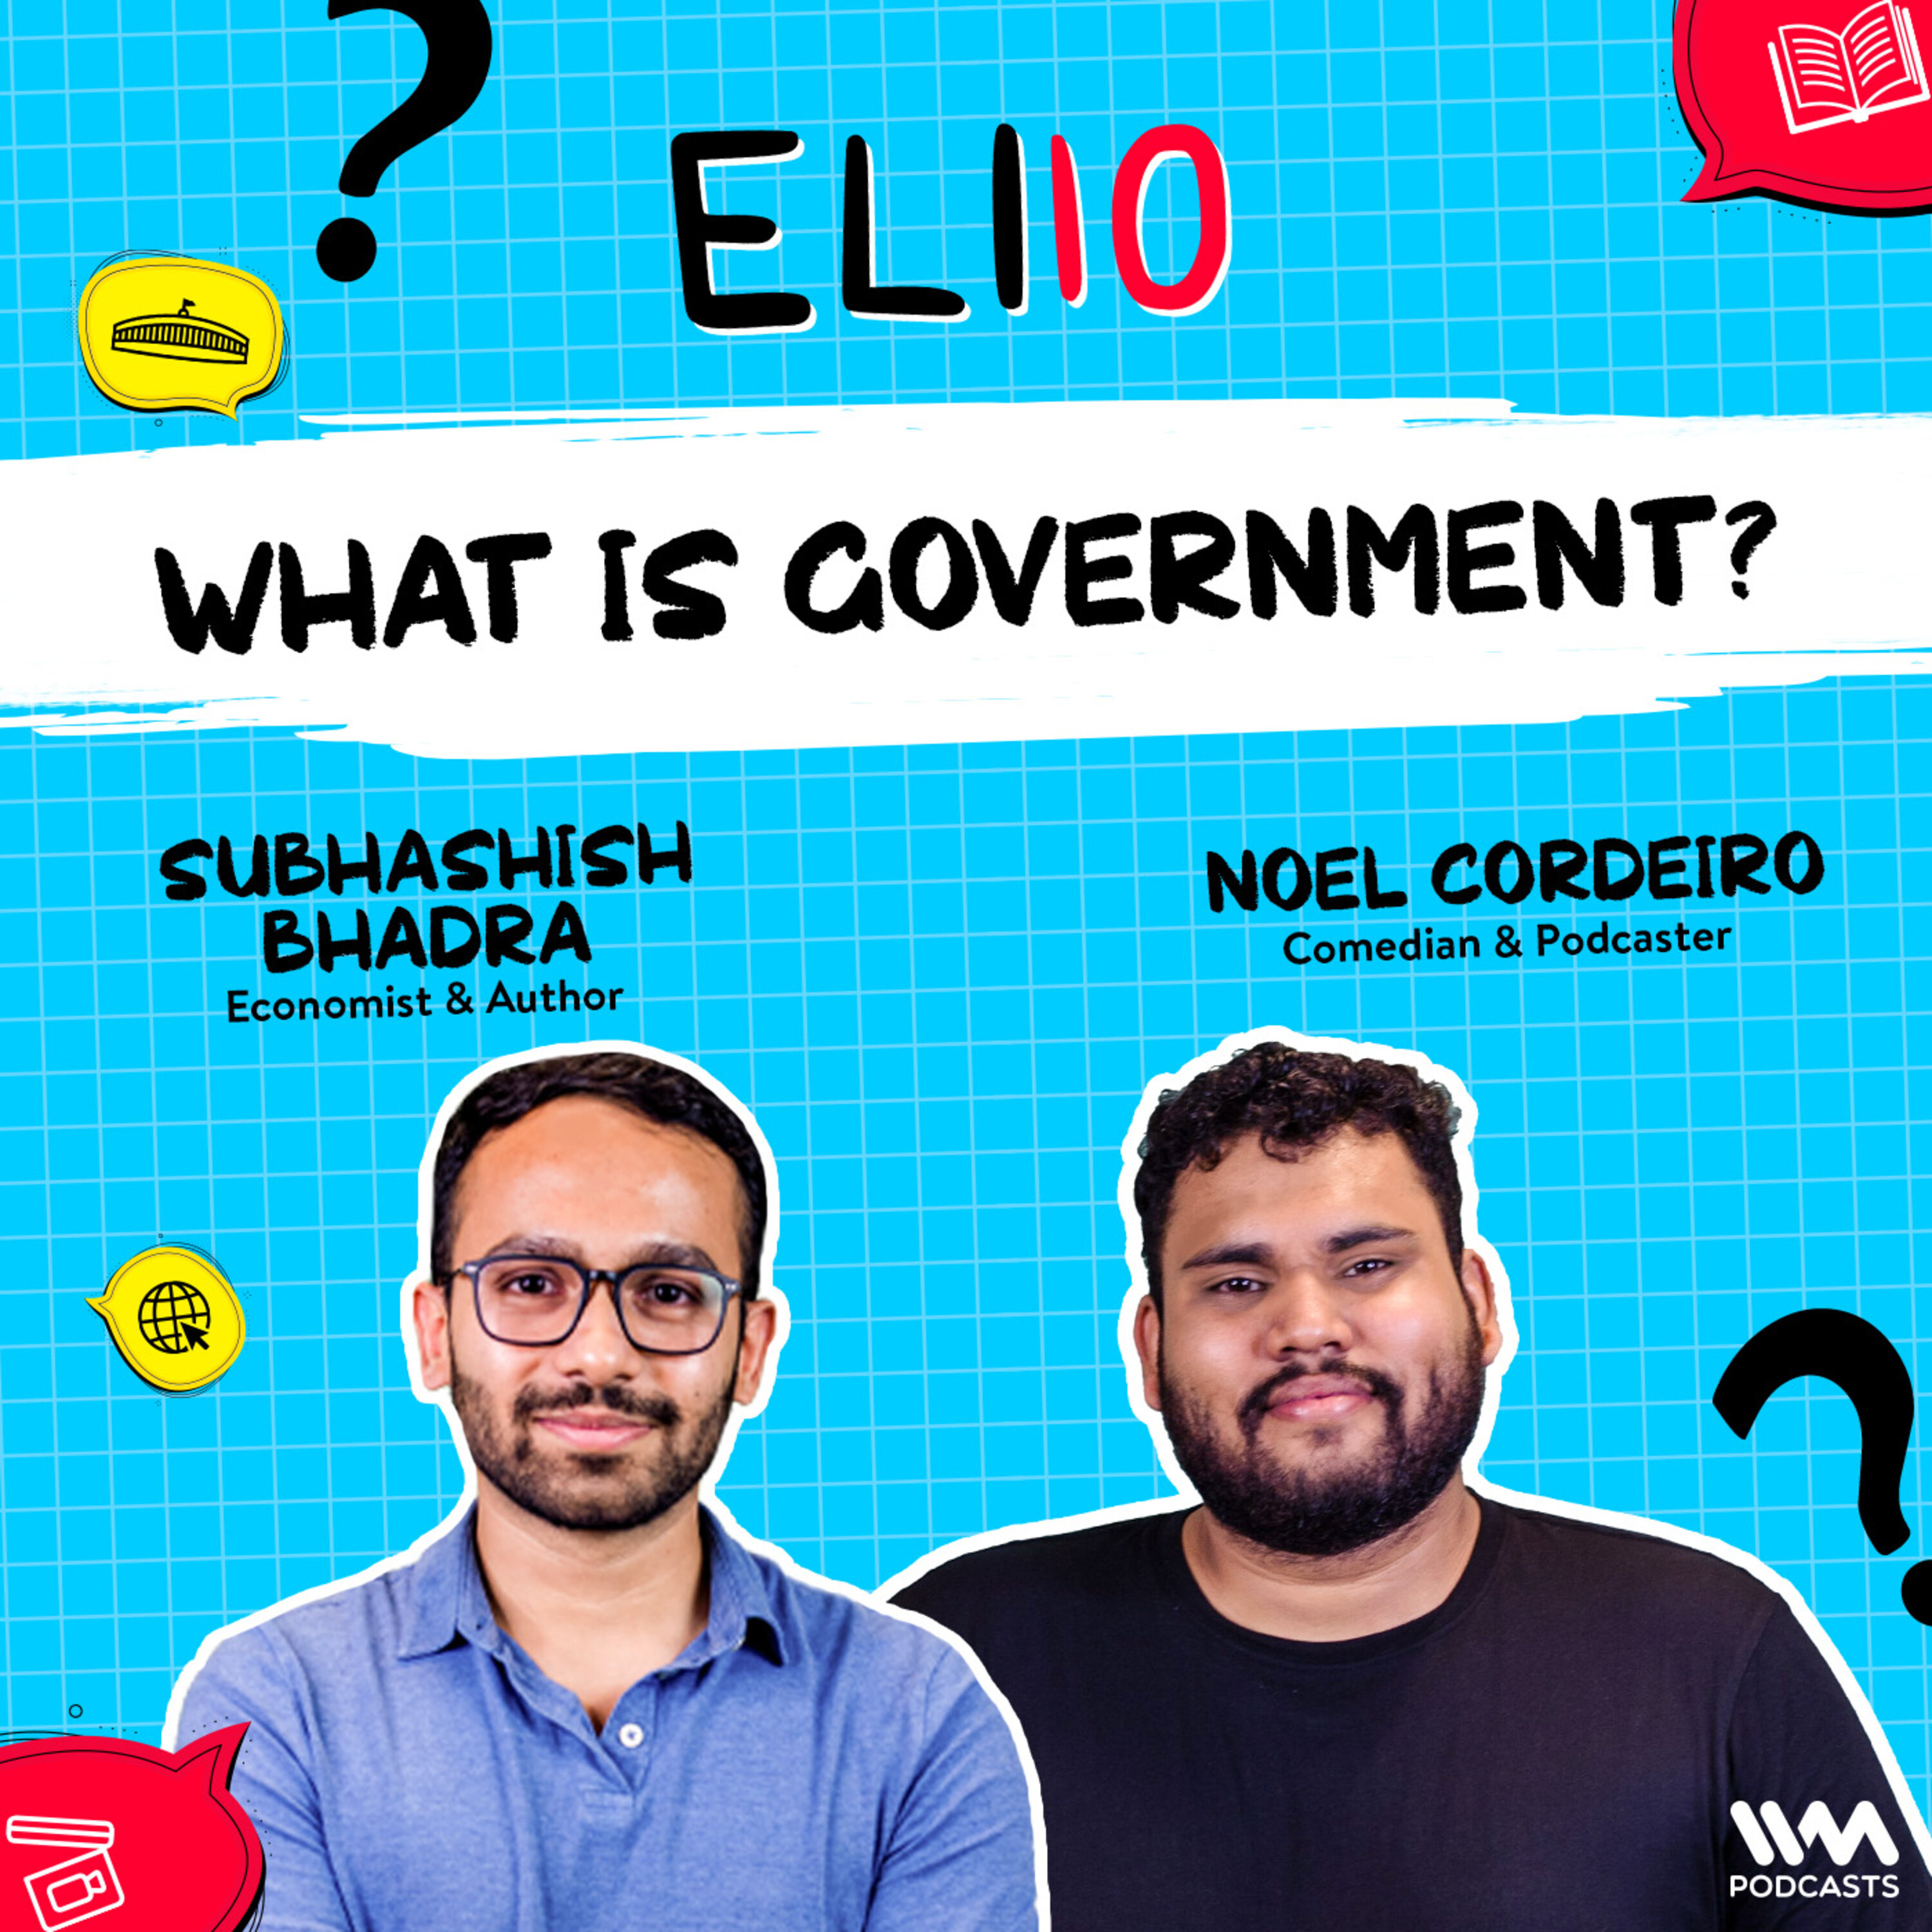 What is government? Ft. Subhashish Bhadra & Noel Cordeiro